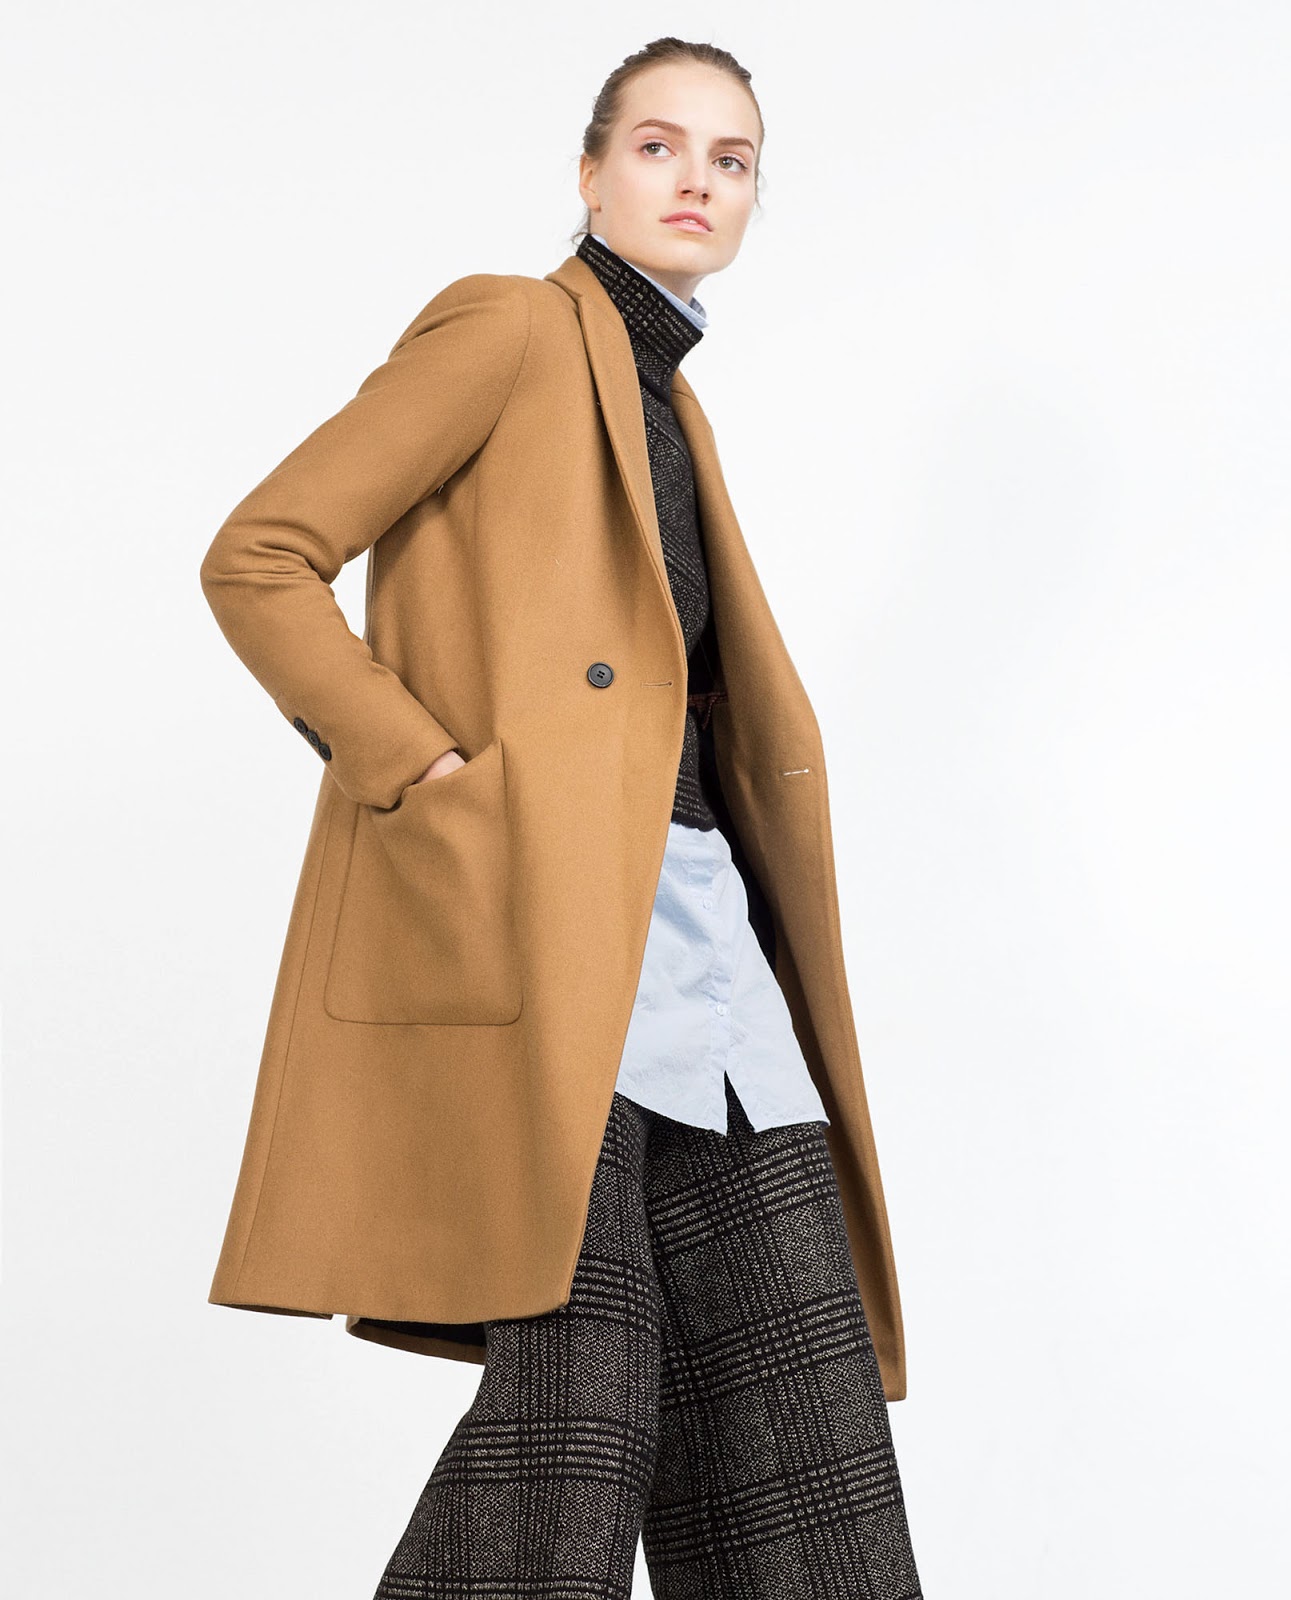 Eniwhere Fashion - Zara coat FW2015-16